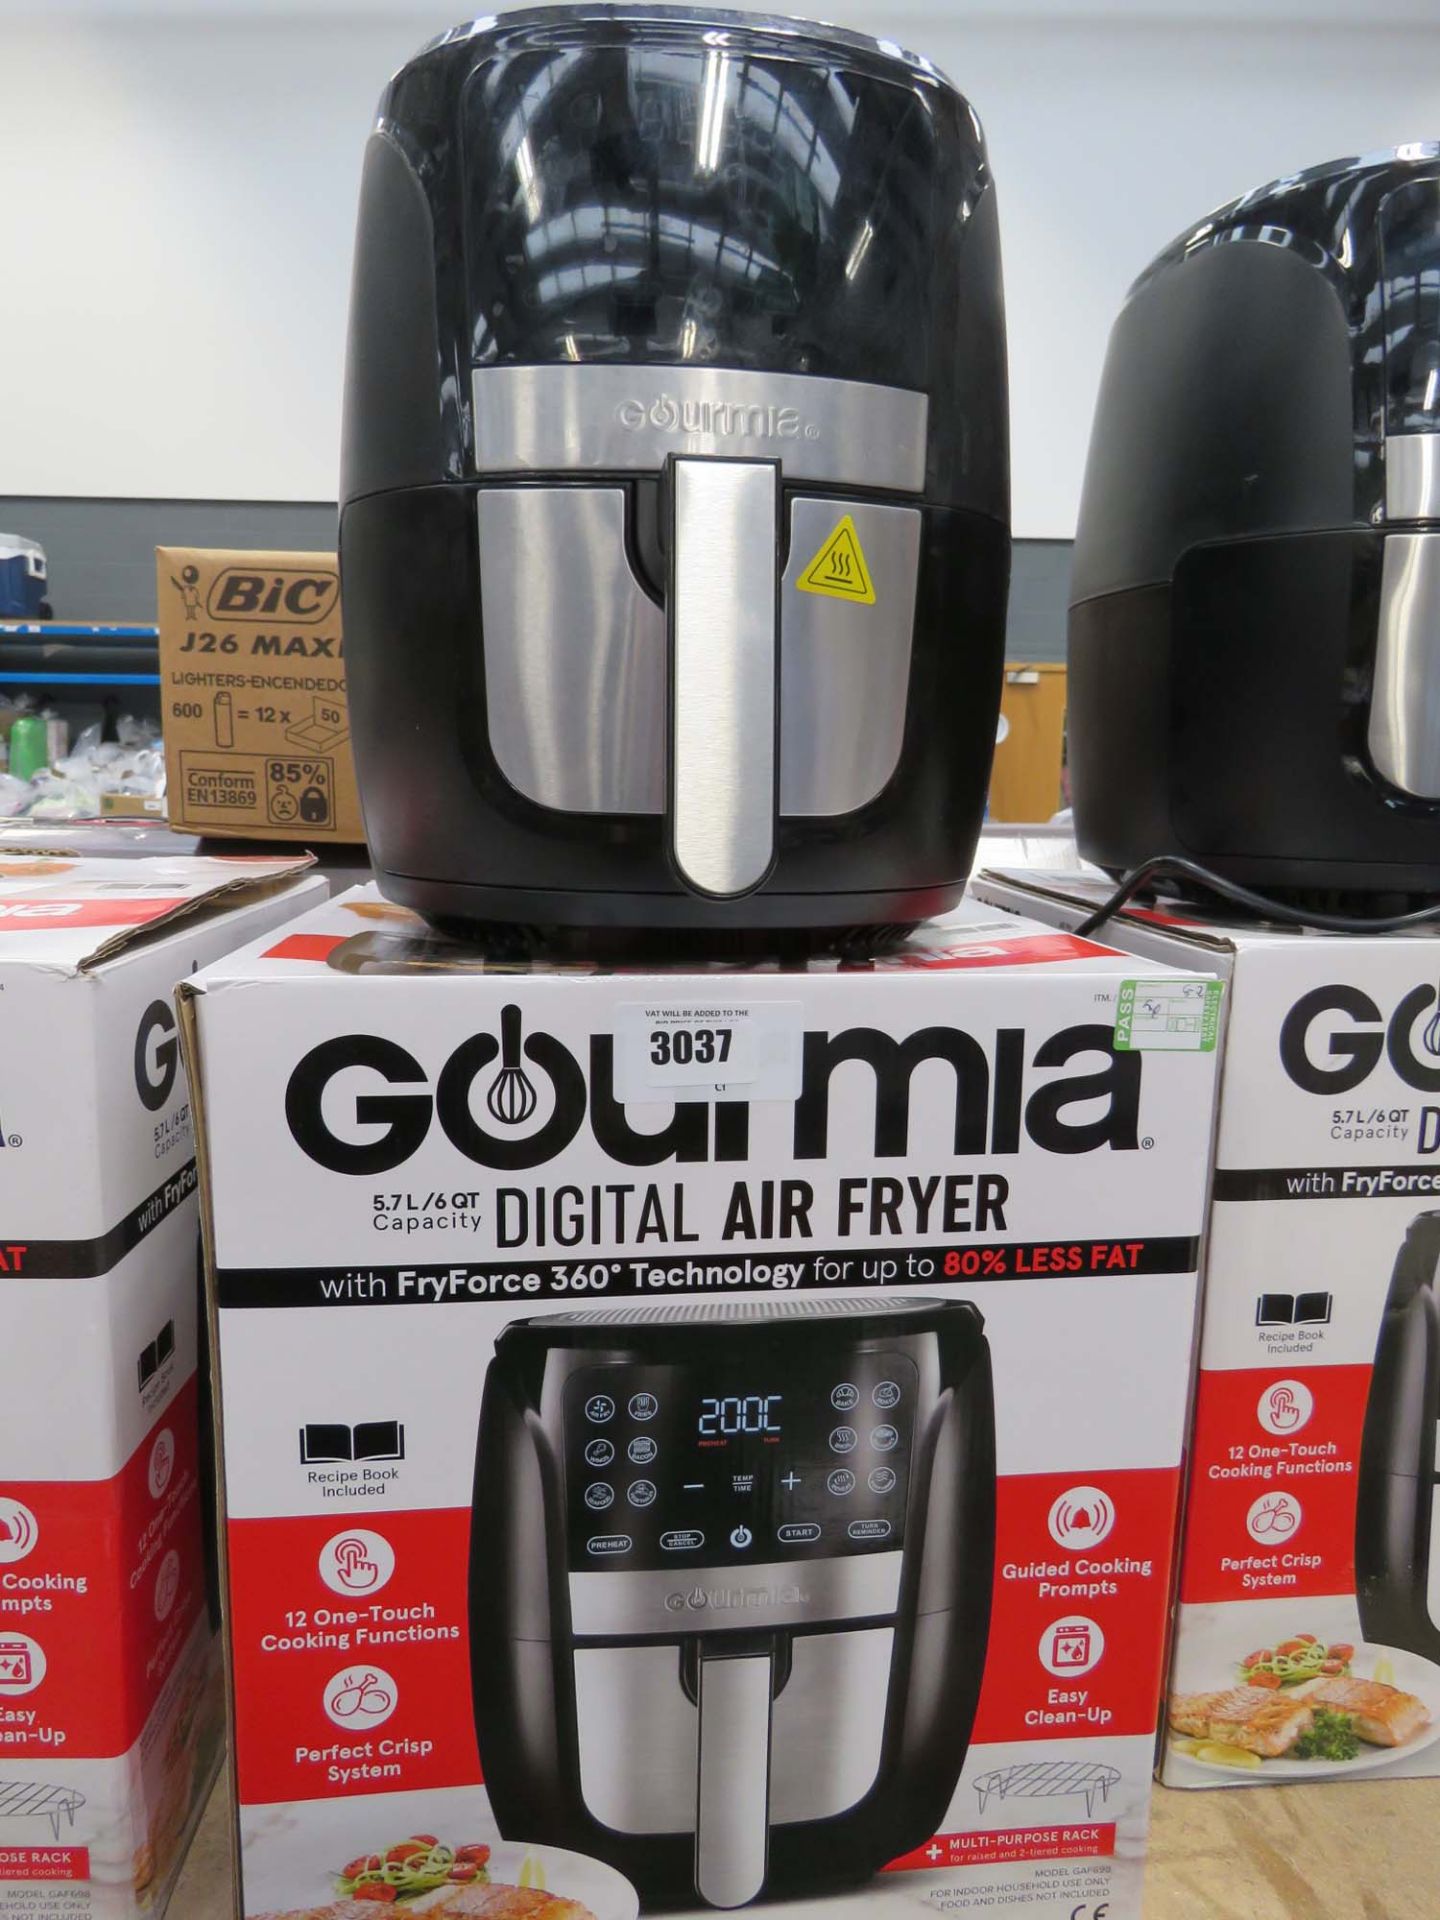 Boxed Gourmia digital air fryer